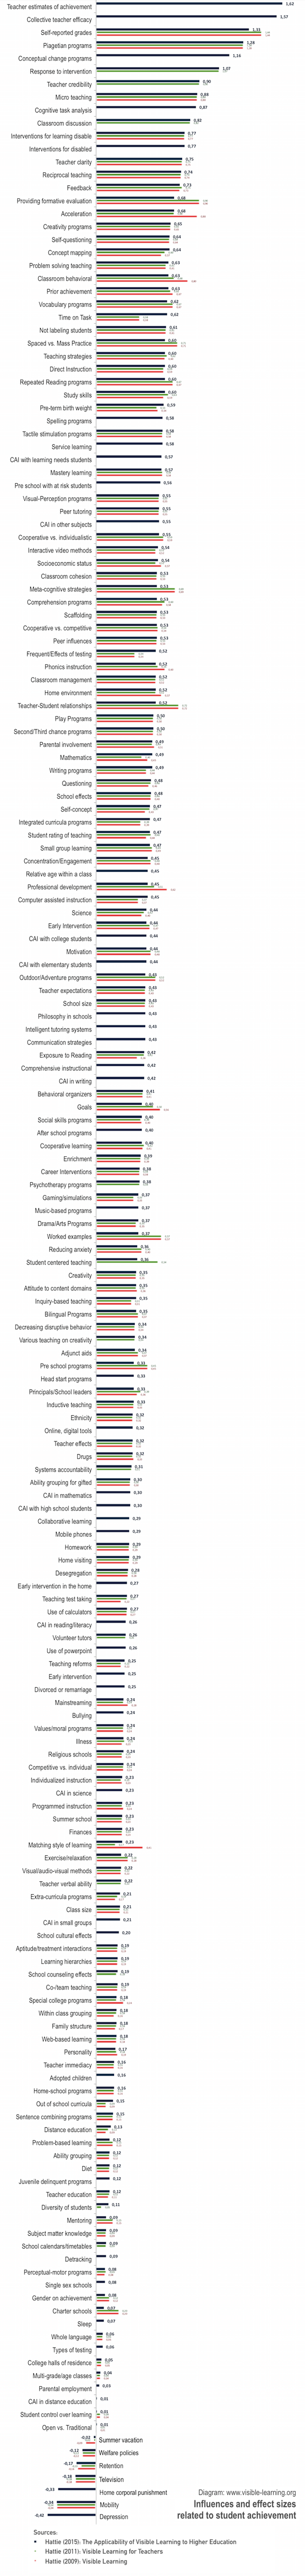 hattie-ranking-influences-effect-sizes-student-achievement-rangliste-updated-2009-2011-2015-new-web